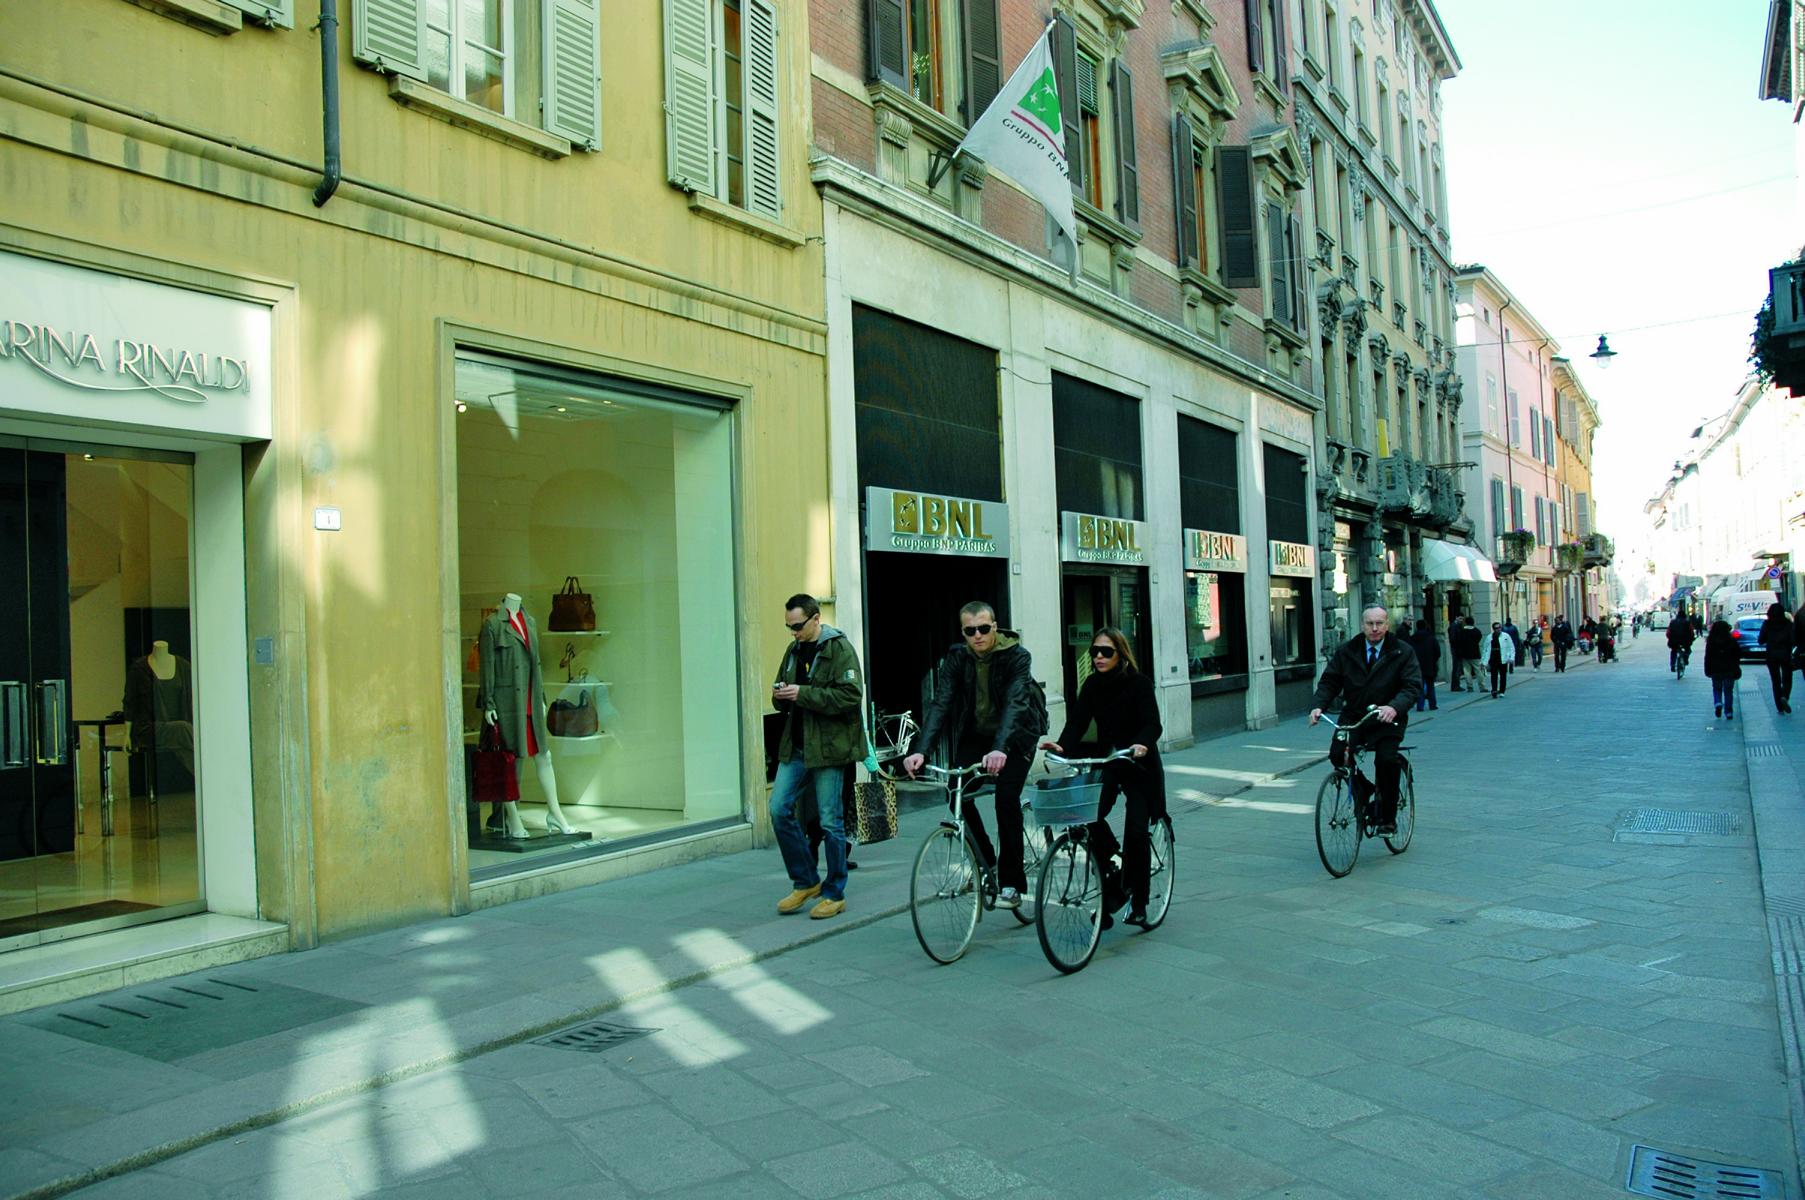 Die Via Emilia San Pietro – heute eine beliebte Einkaufsstraße